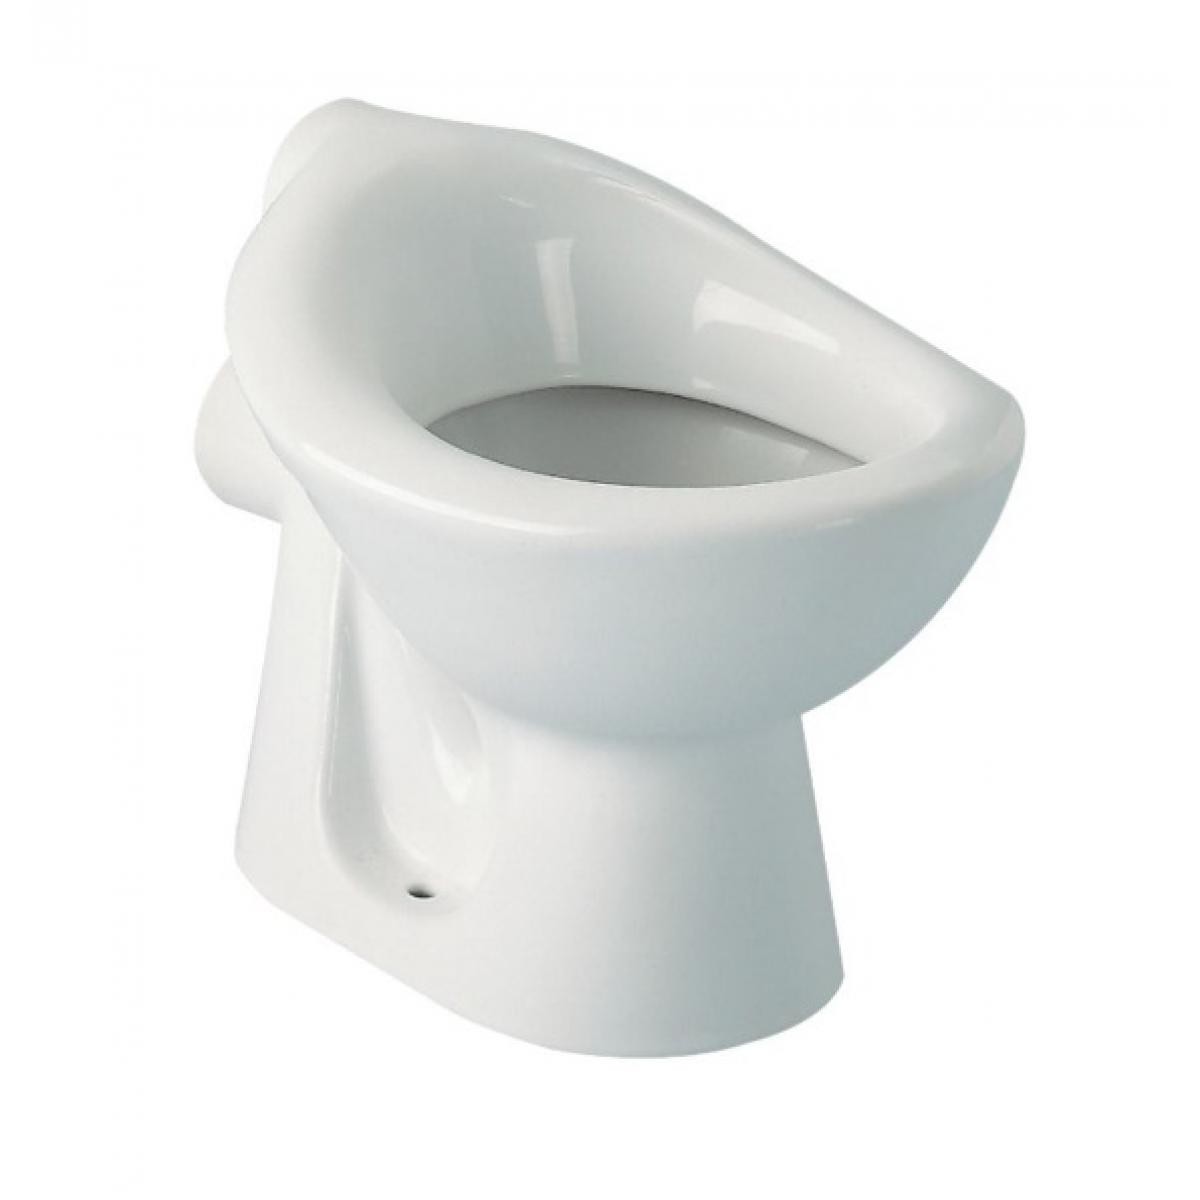 Ideal Standard - Ideal Standard - Cuvette WC indépendante crèche en porcelaine blanche bord rond - CONTOUR 21 - Broyeur WC